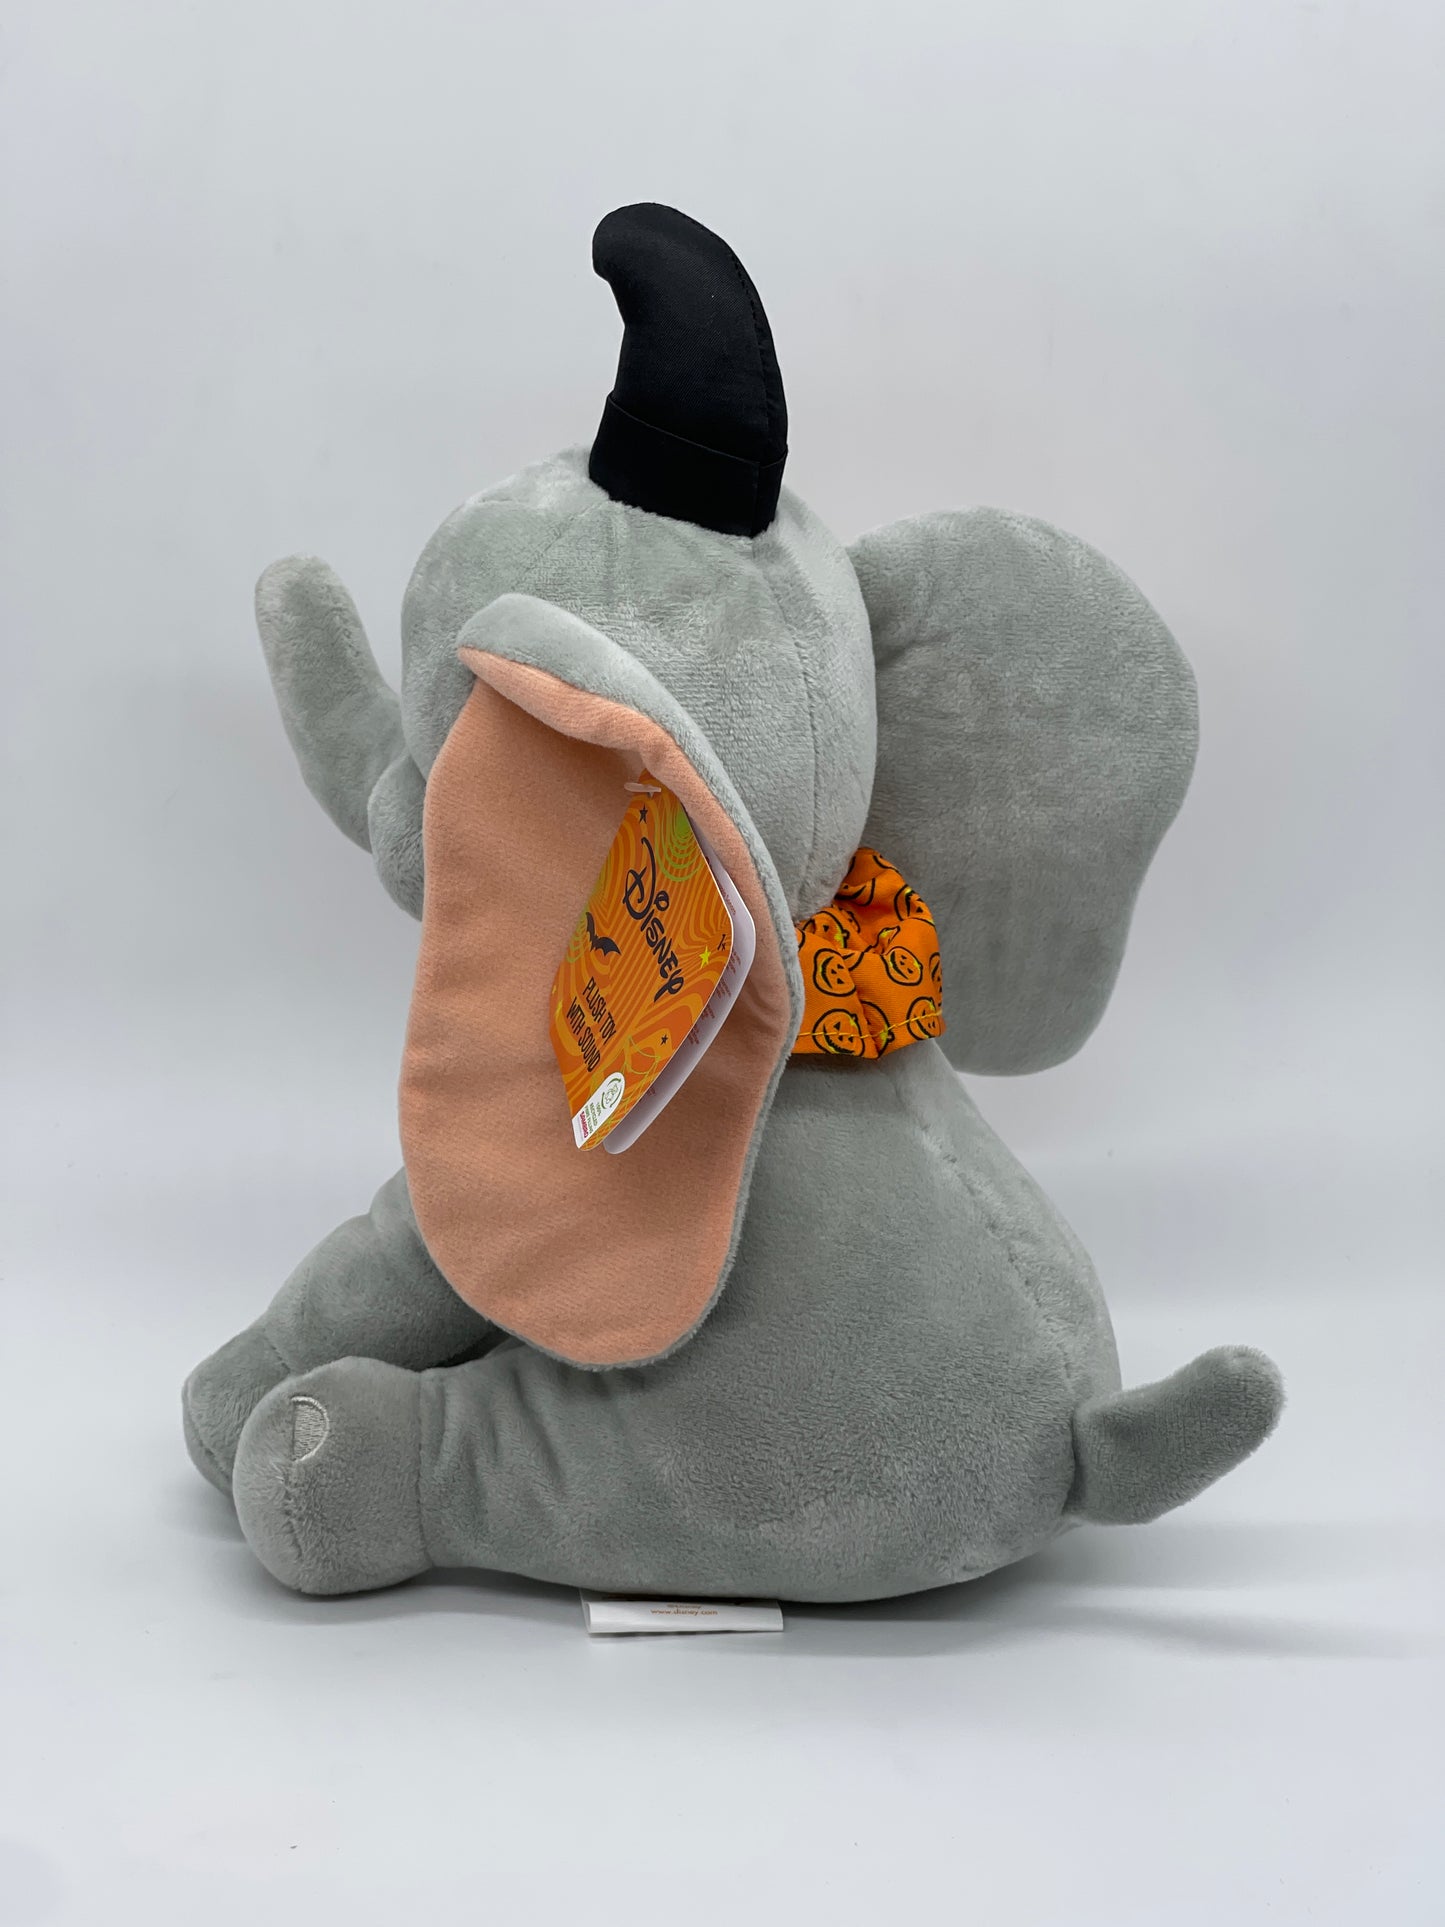 Disney Halloween "Dumbo Kürbis Pumpkin" Plüschtier Stofftier mit Halloweensound